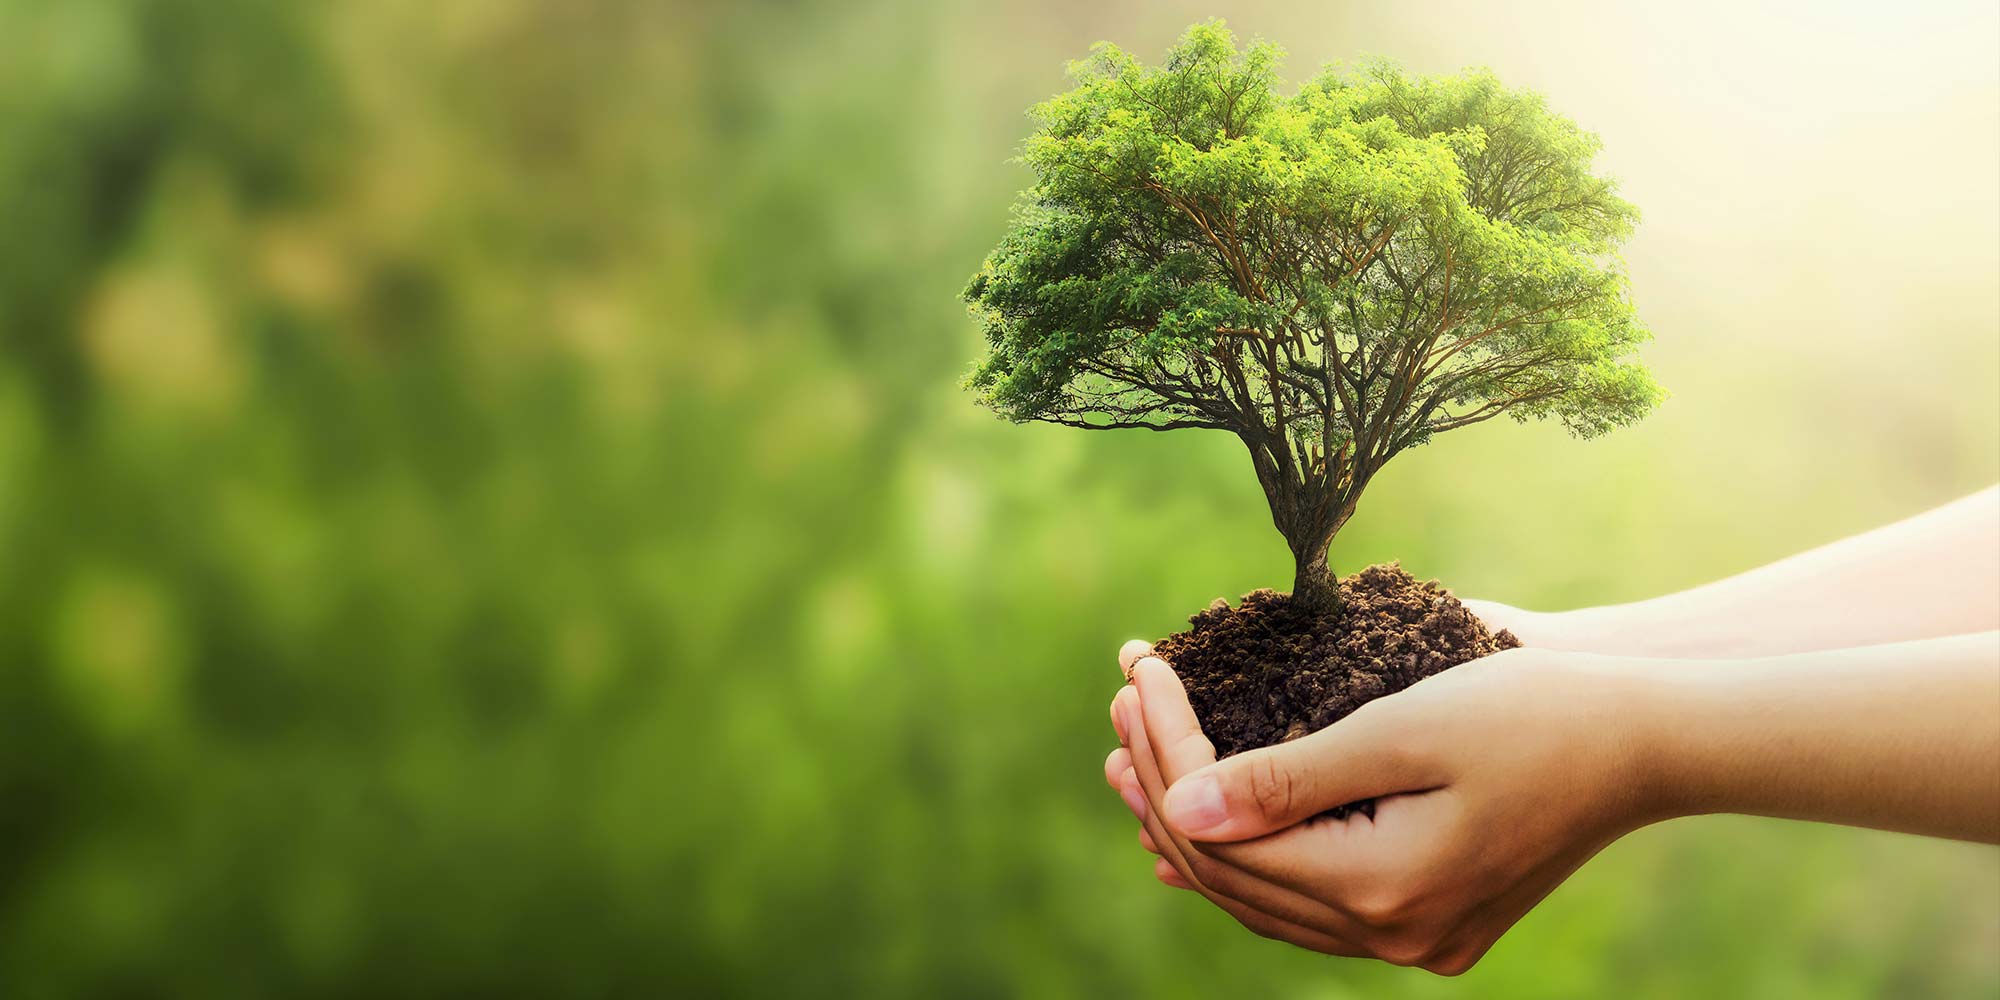 Dicas de sustentabilidade no dia a dia - mãos segurando uma muda de árvore